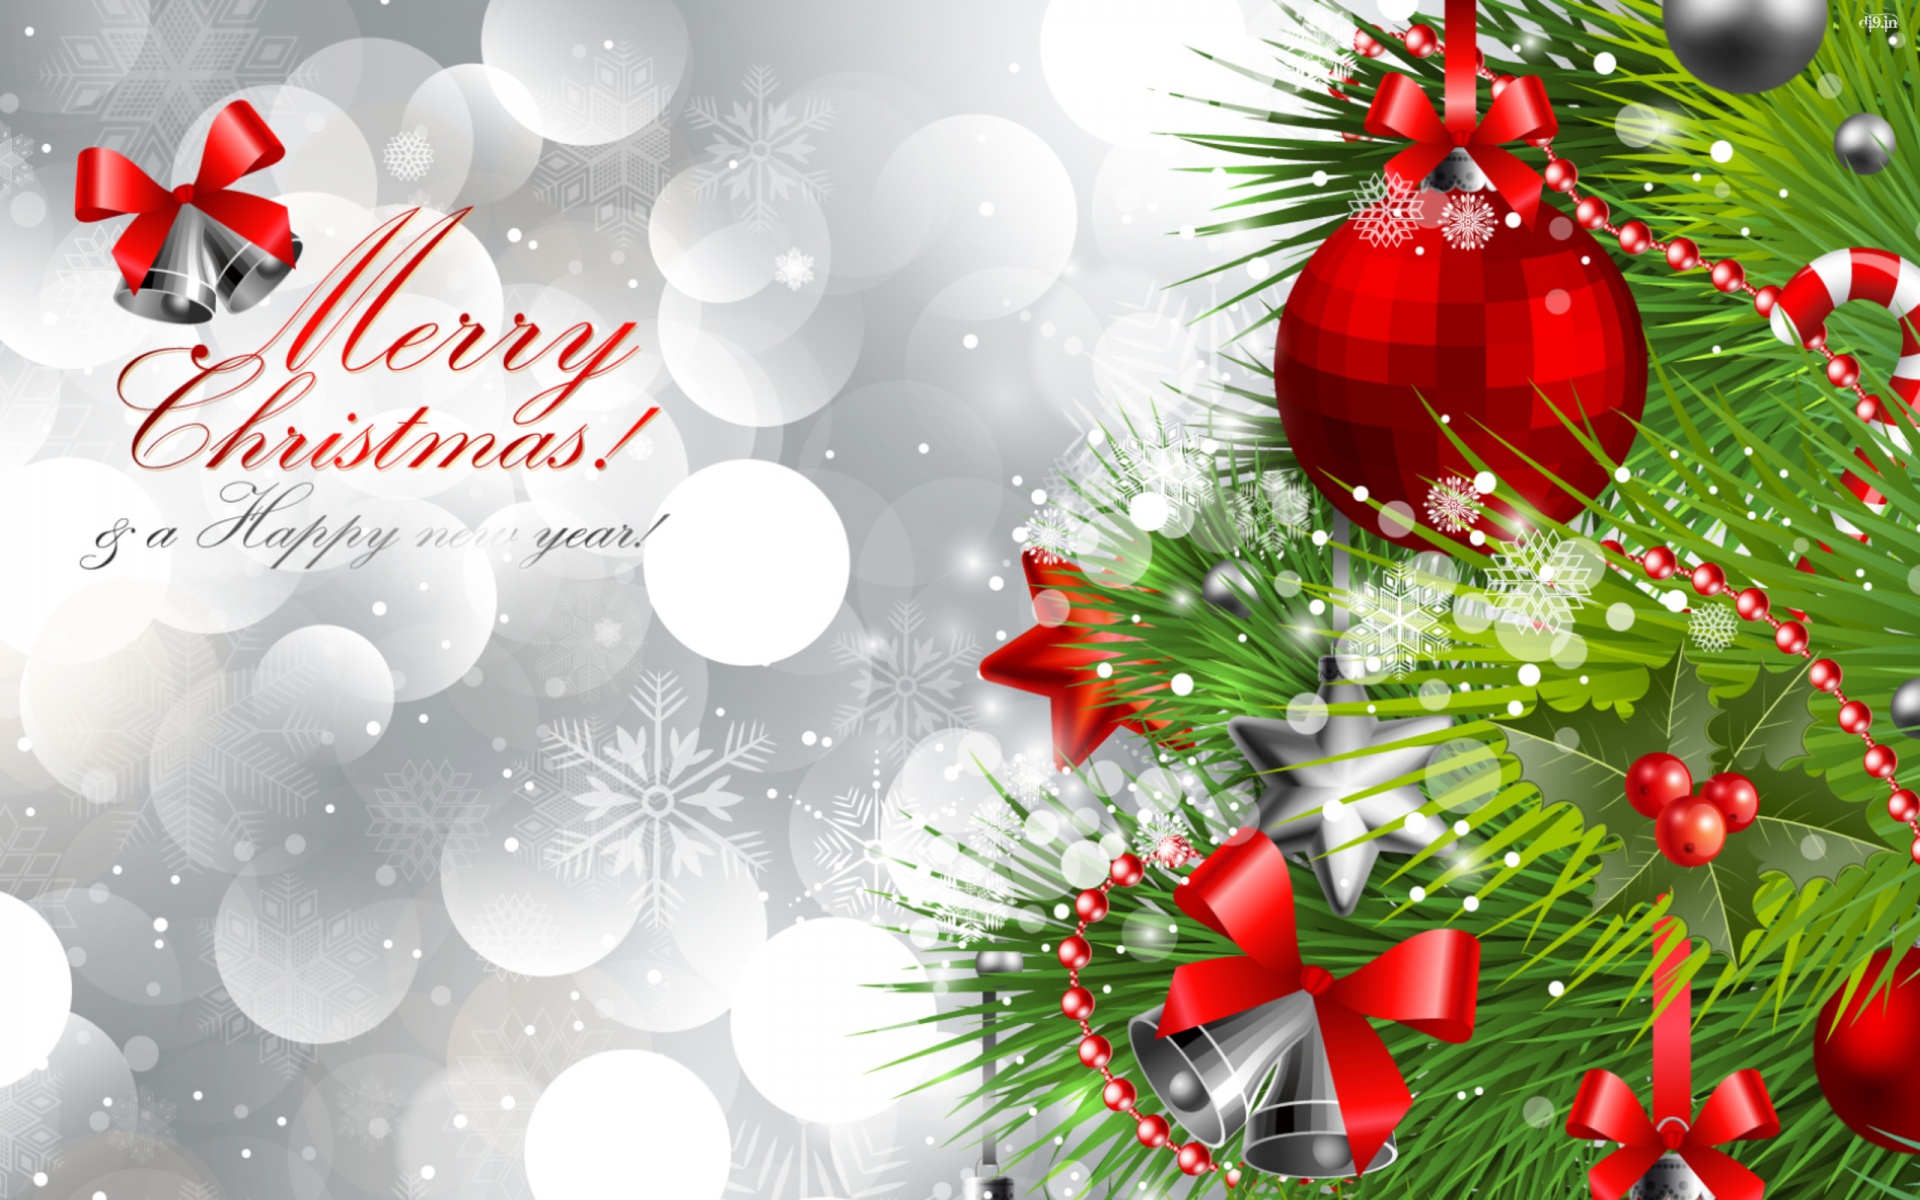 merry-christmas-happy-new-year-2014.jpg